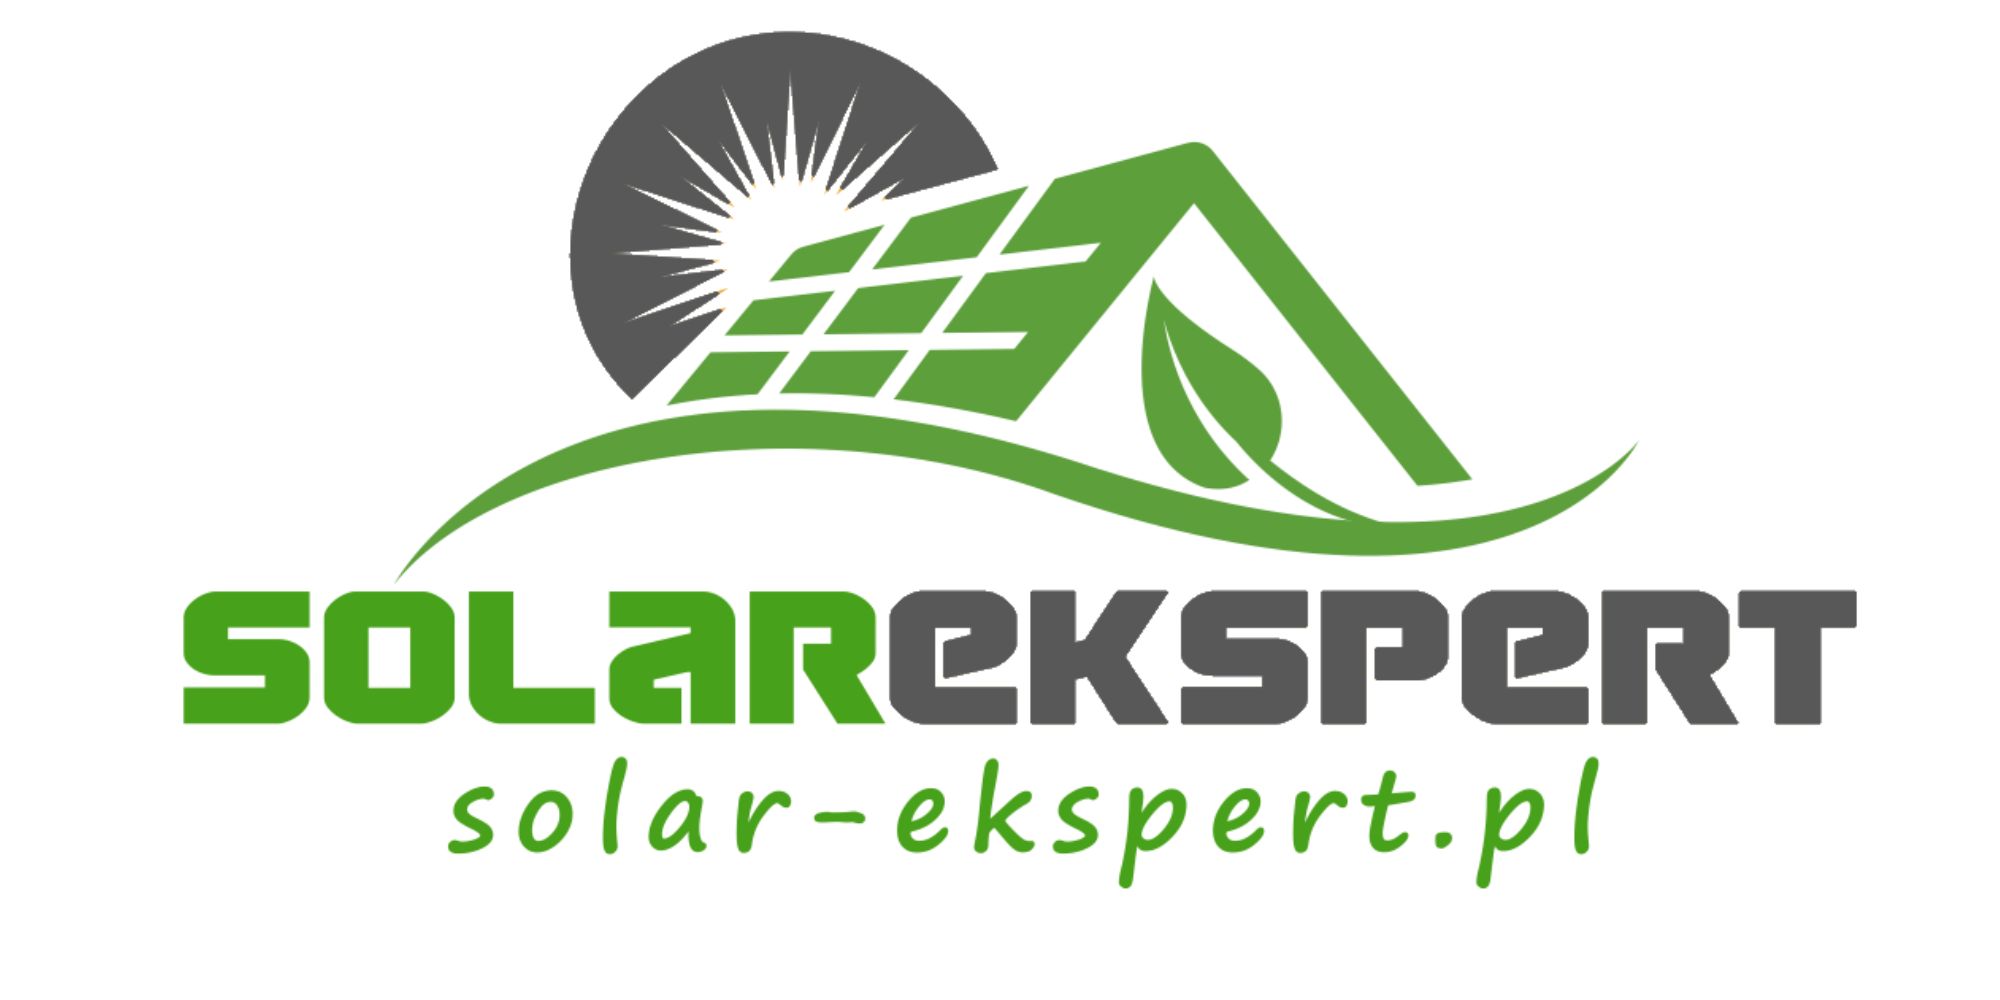 Solar-ekspert